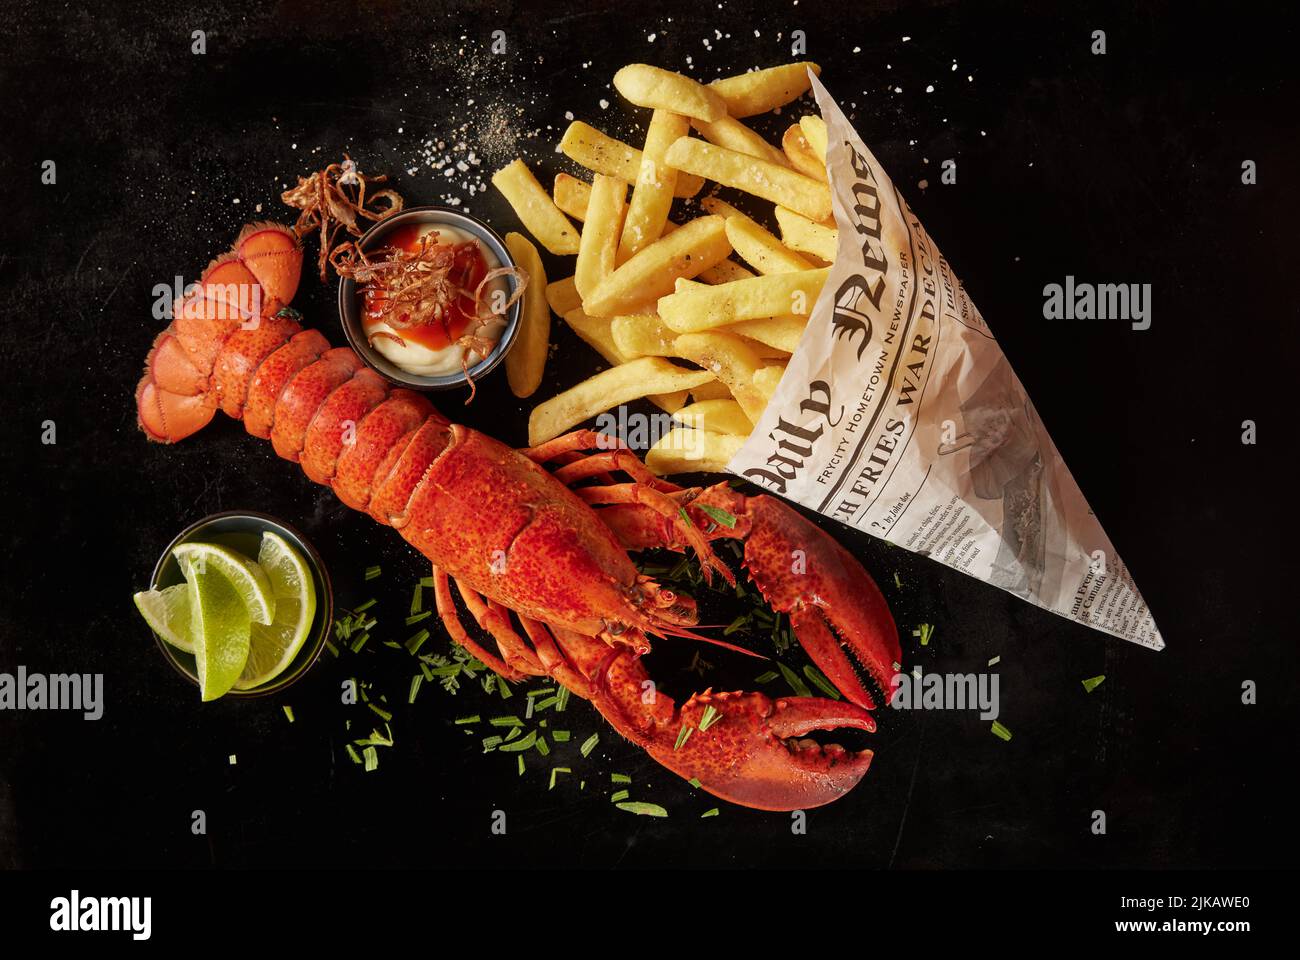 Vue de dessus de délicieux homard rouge et chips de pomme de terre dans un journal, servi avec de la sauce et des herbes près des tranches de lime sur fond noir Banque D'Images